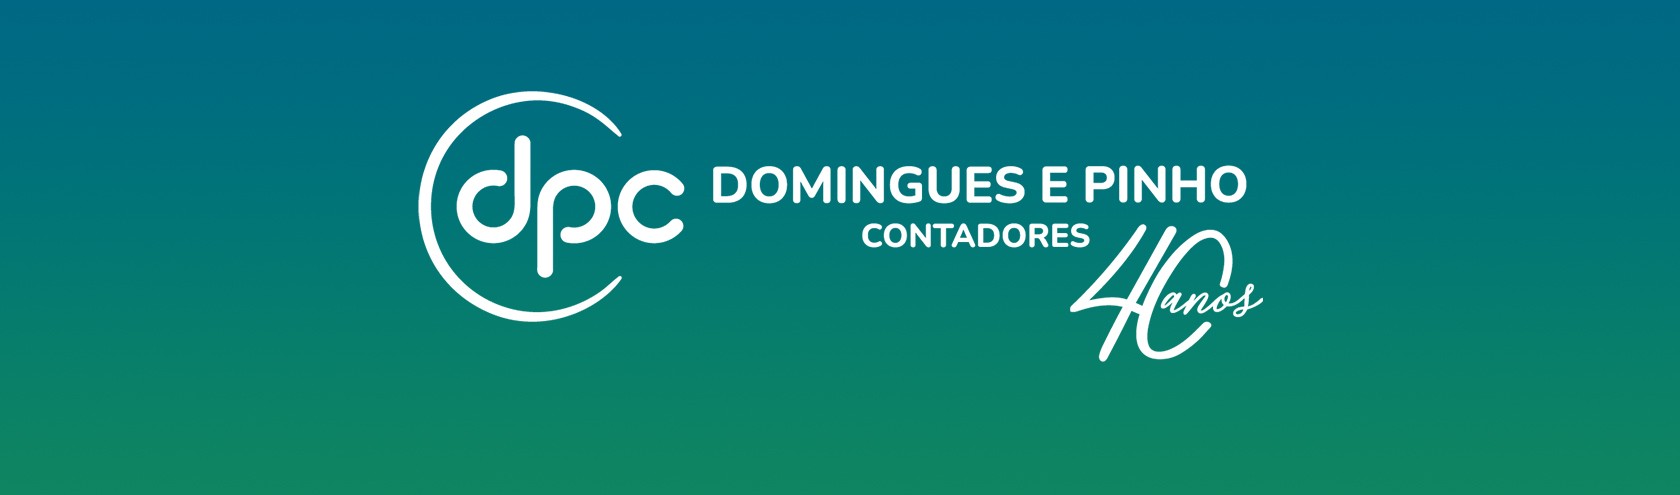 Domingues e Pinho Contadores celebra 40 anos de história